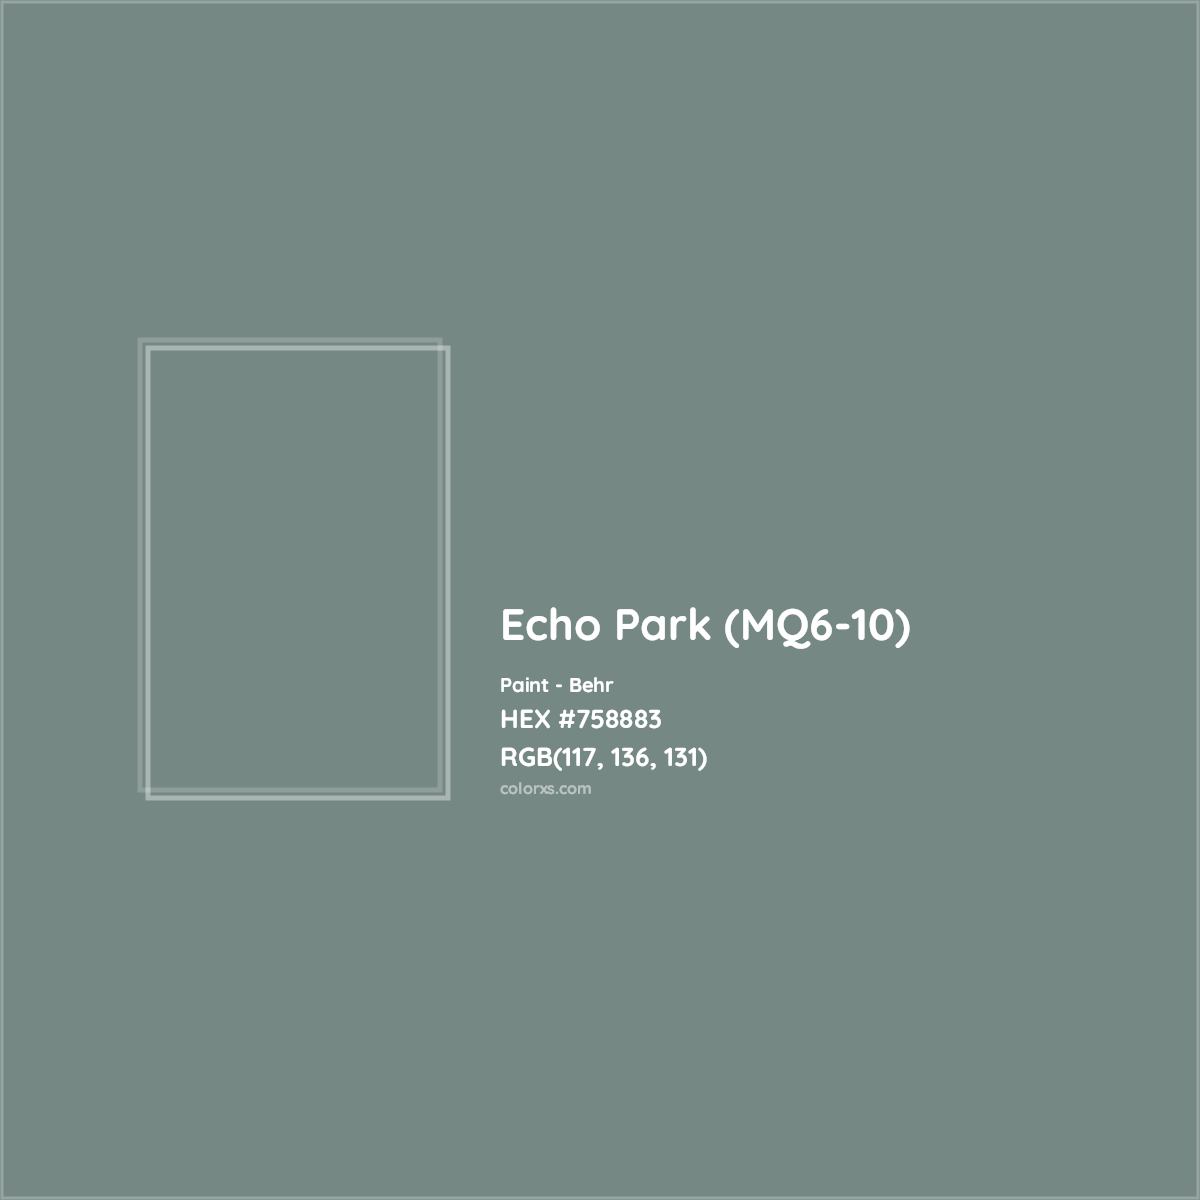 HEX #758883 Echo Park (MQ6-10) Paint Behr - Color Code